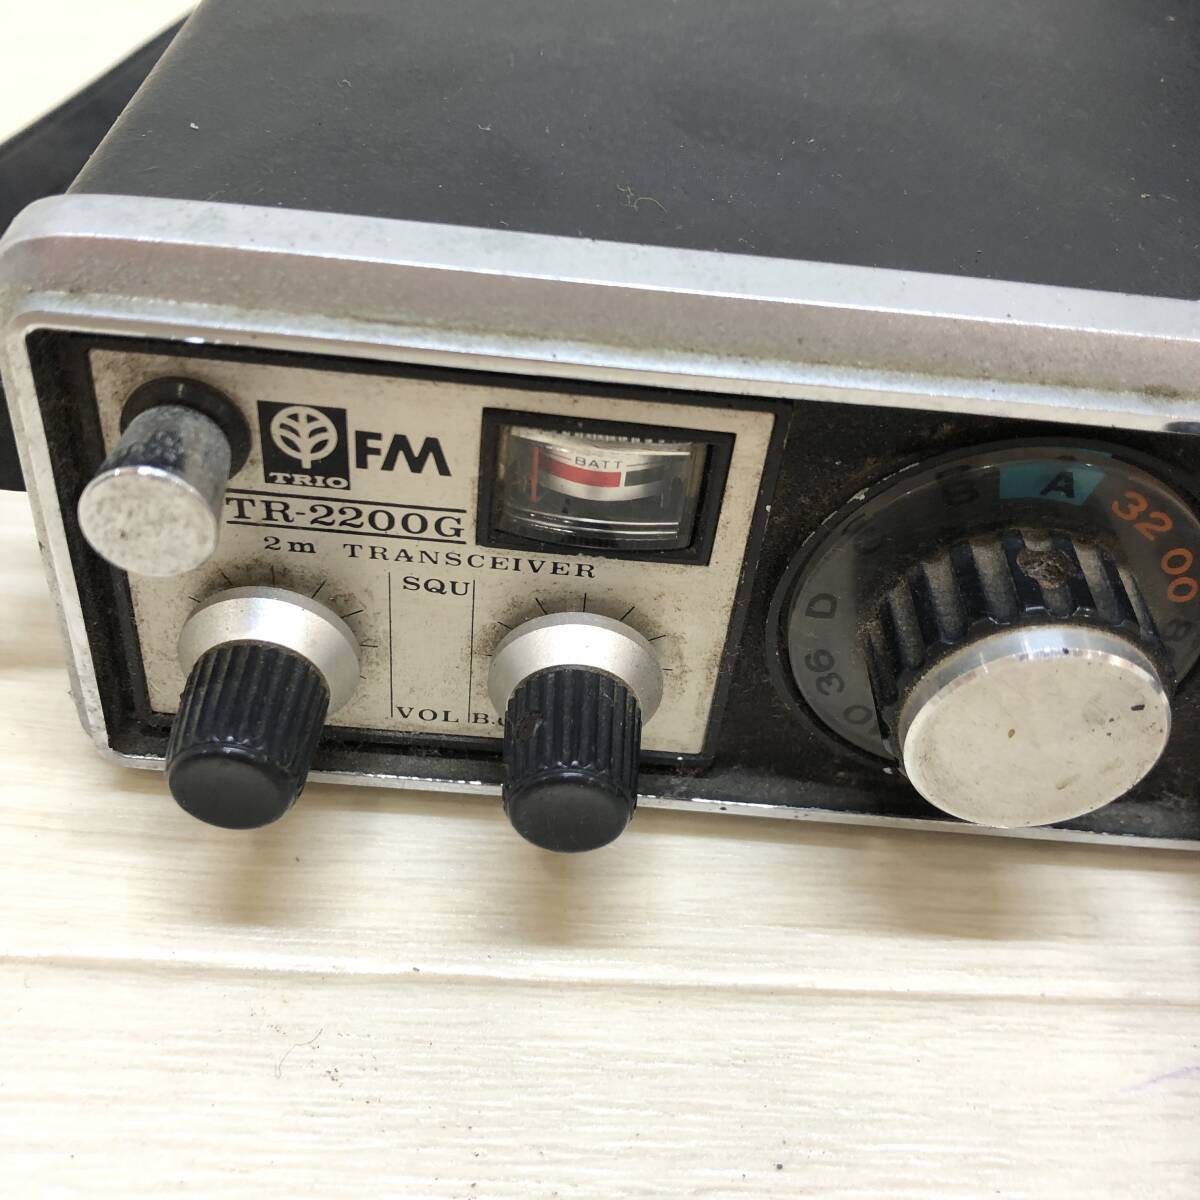 ^ TRIO Trio 2M FM приемопередатчик TR-2200G рация радиолюбительская связь хобби ремонт работоспособность не проверялась утиль ^C72862